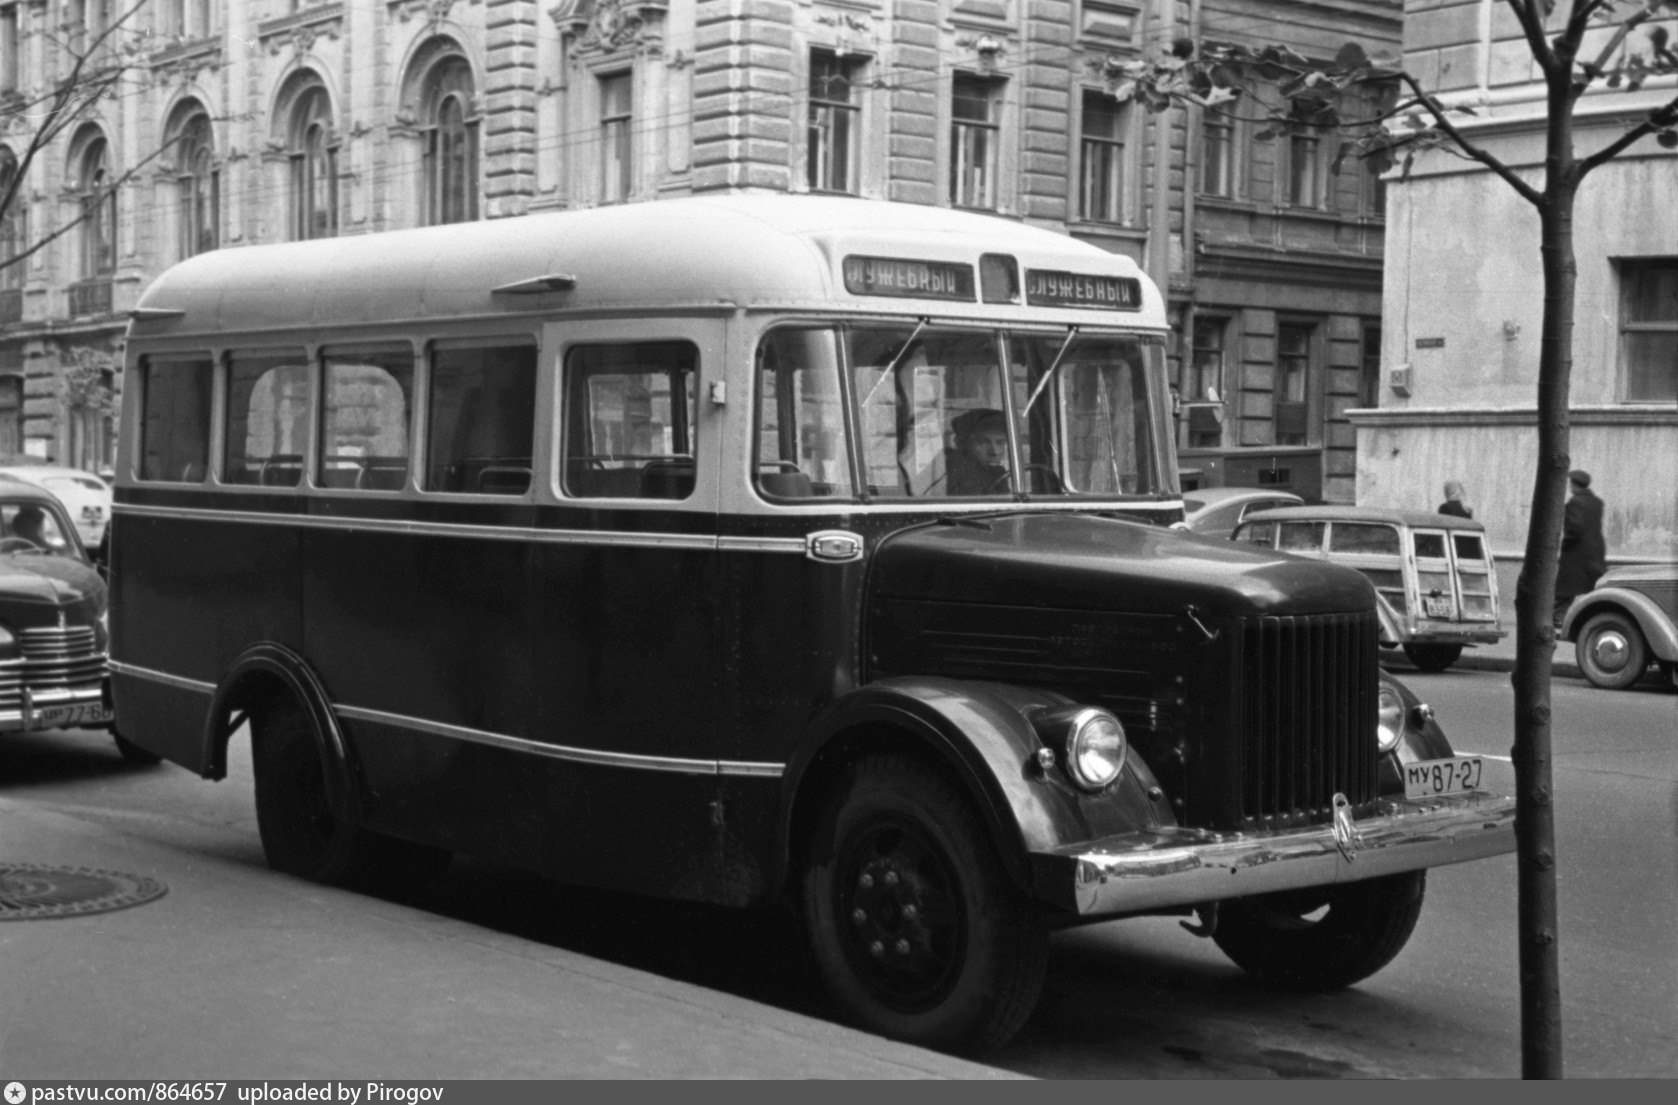 Пятьдесят первый автобус. ГЗА-651 автобус. ПАЗ 651. КАВЗ 651. ГЗА - 651 (ПАЗ - 651).